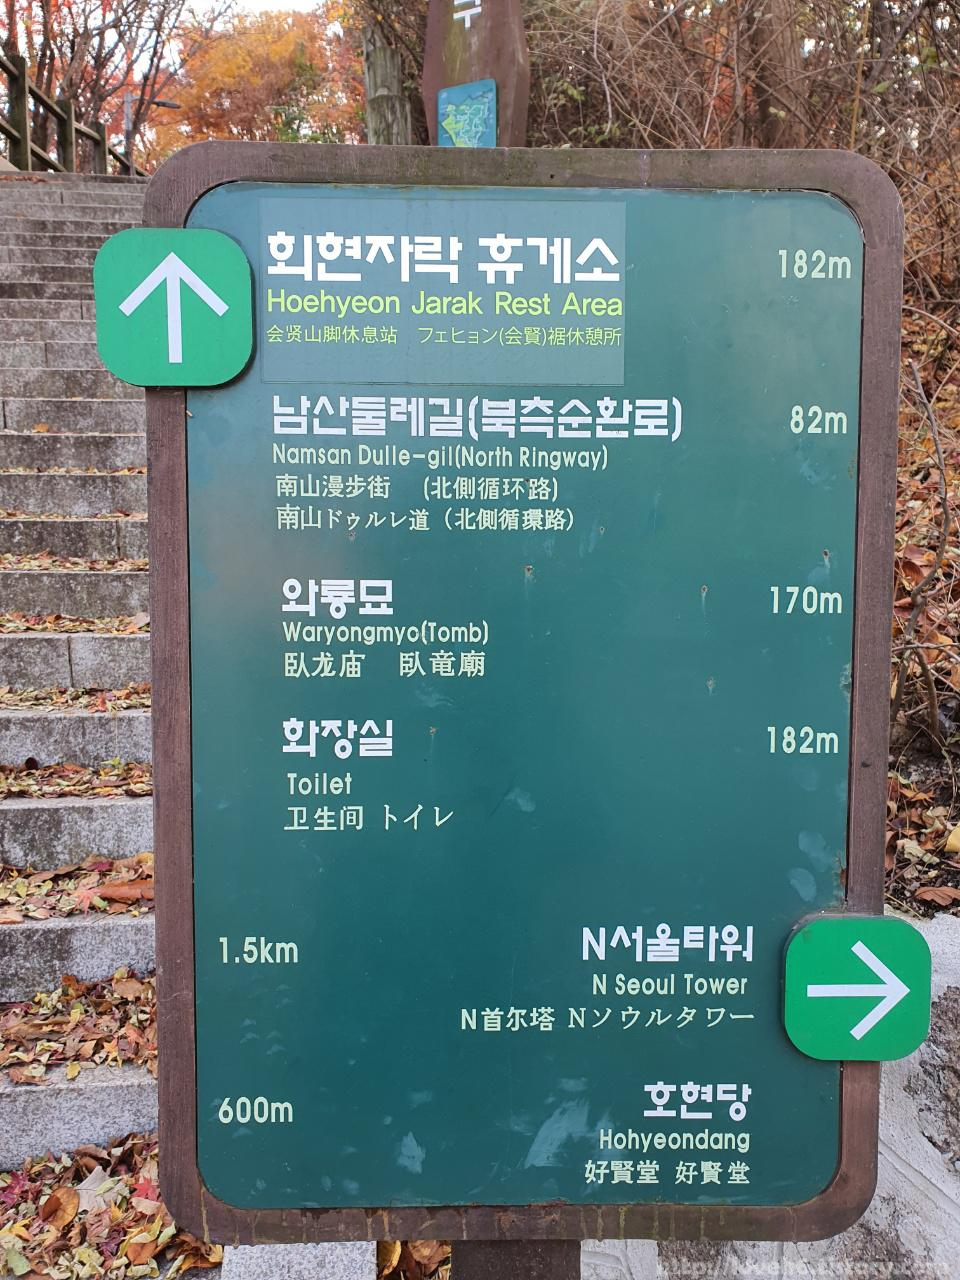 남산 Namsan/ 회현자락 휴게소까지 182m고 남산둘레길(북측순환로)까지82m 정도 걸리네요 남산타워까지는1.5km 걸리네요~